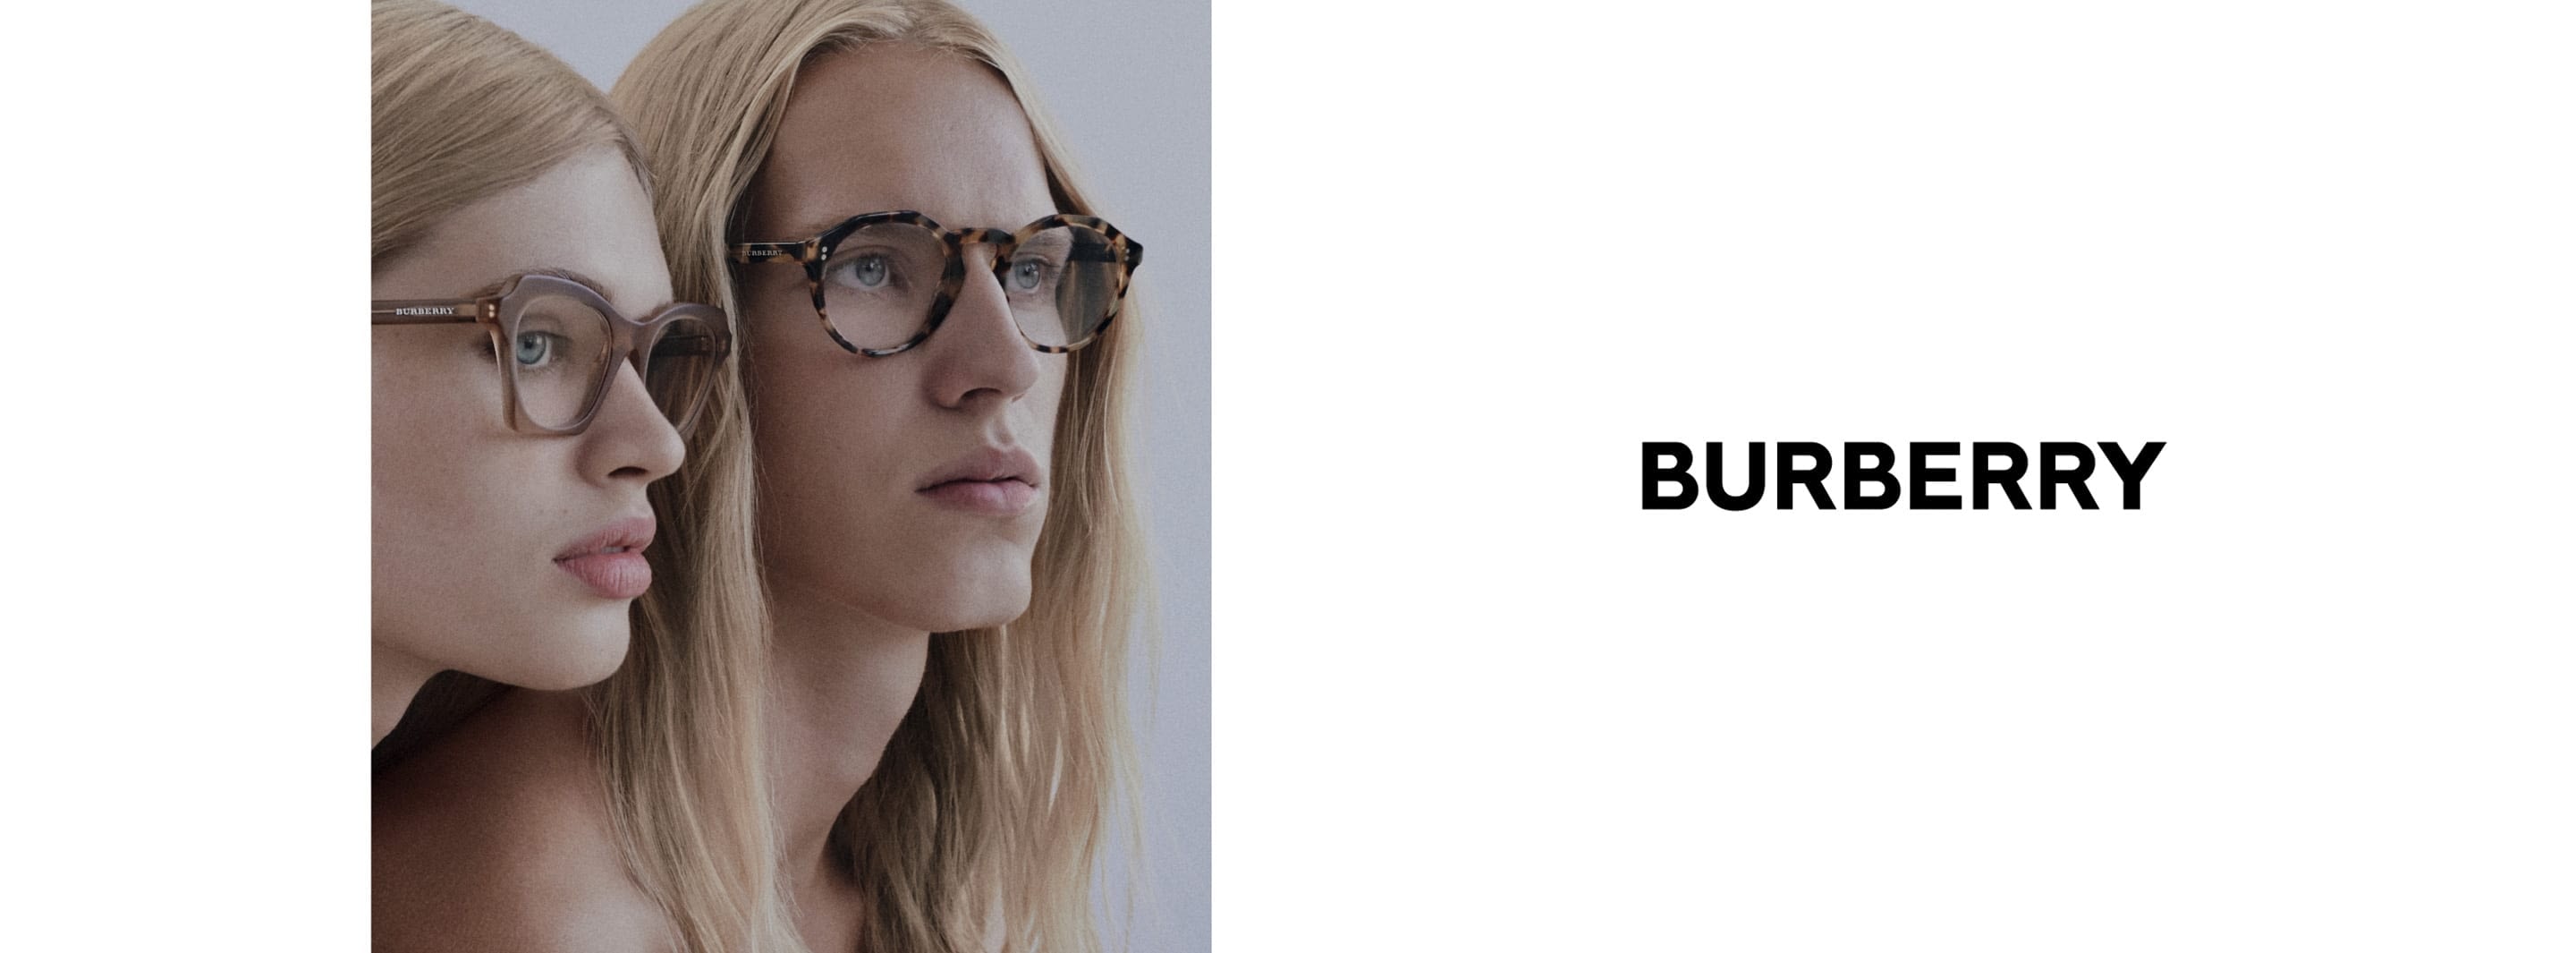 burberry optical frames 2018